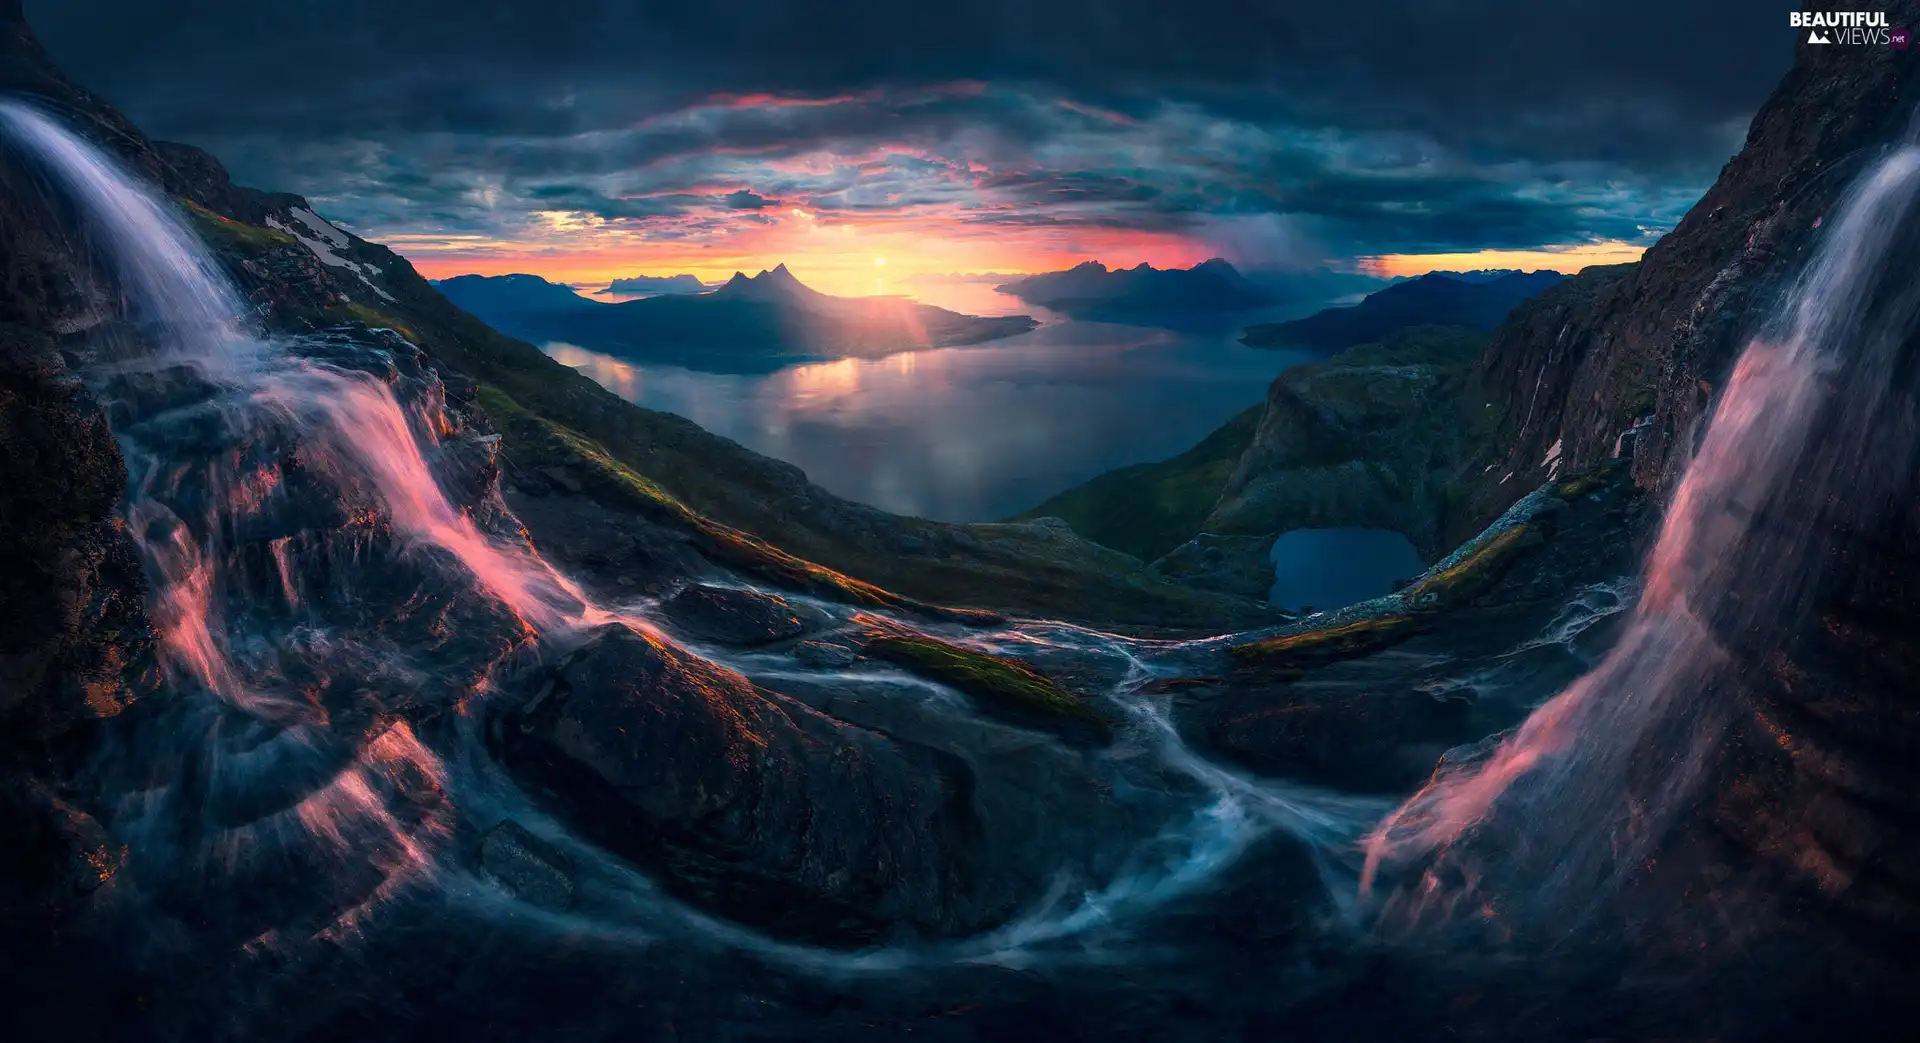 Mountains, Norway, rocks, Great Sunsets, waterfall, Lofoten